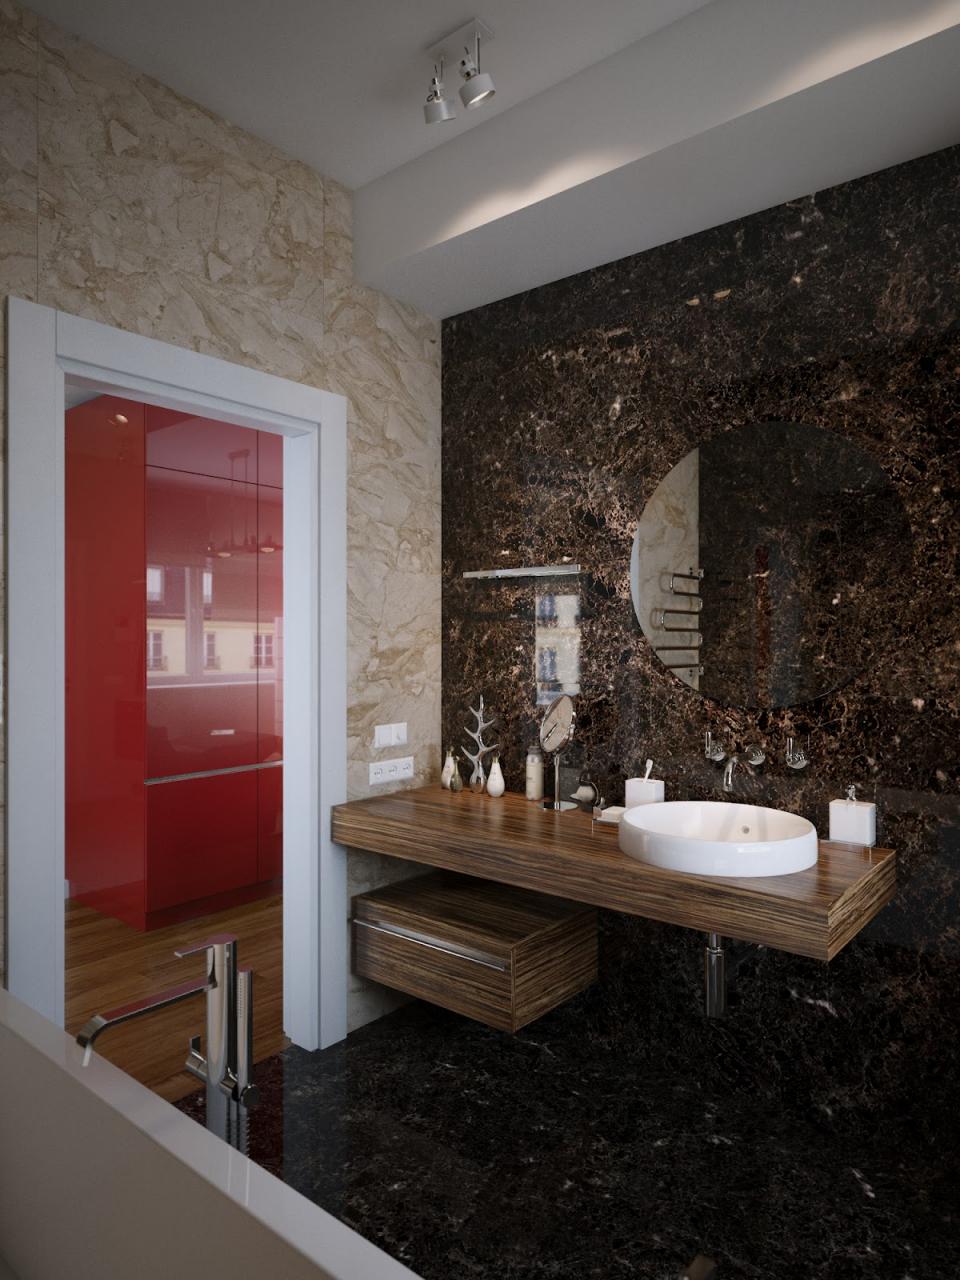 Dark dramatic bathroom scheme Interior Design Ideas